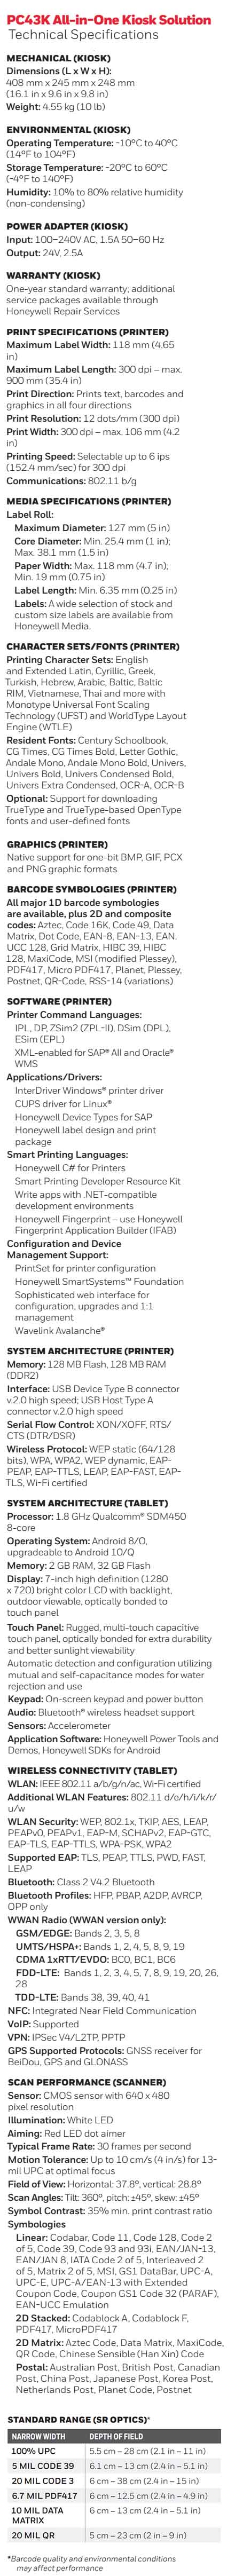 Honeywell PC43K Kiosk Solution Desktop Printer datasheet